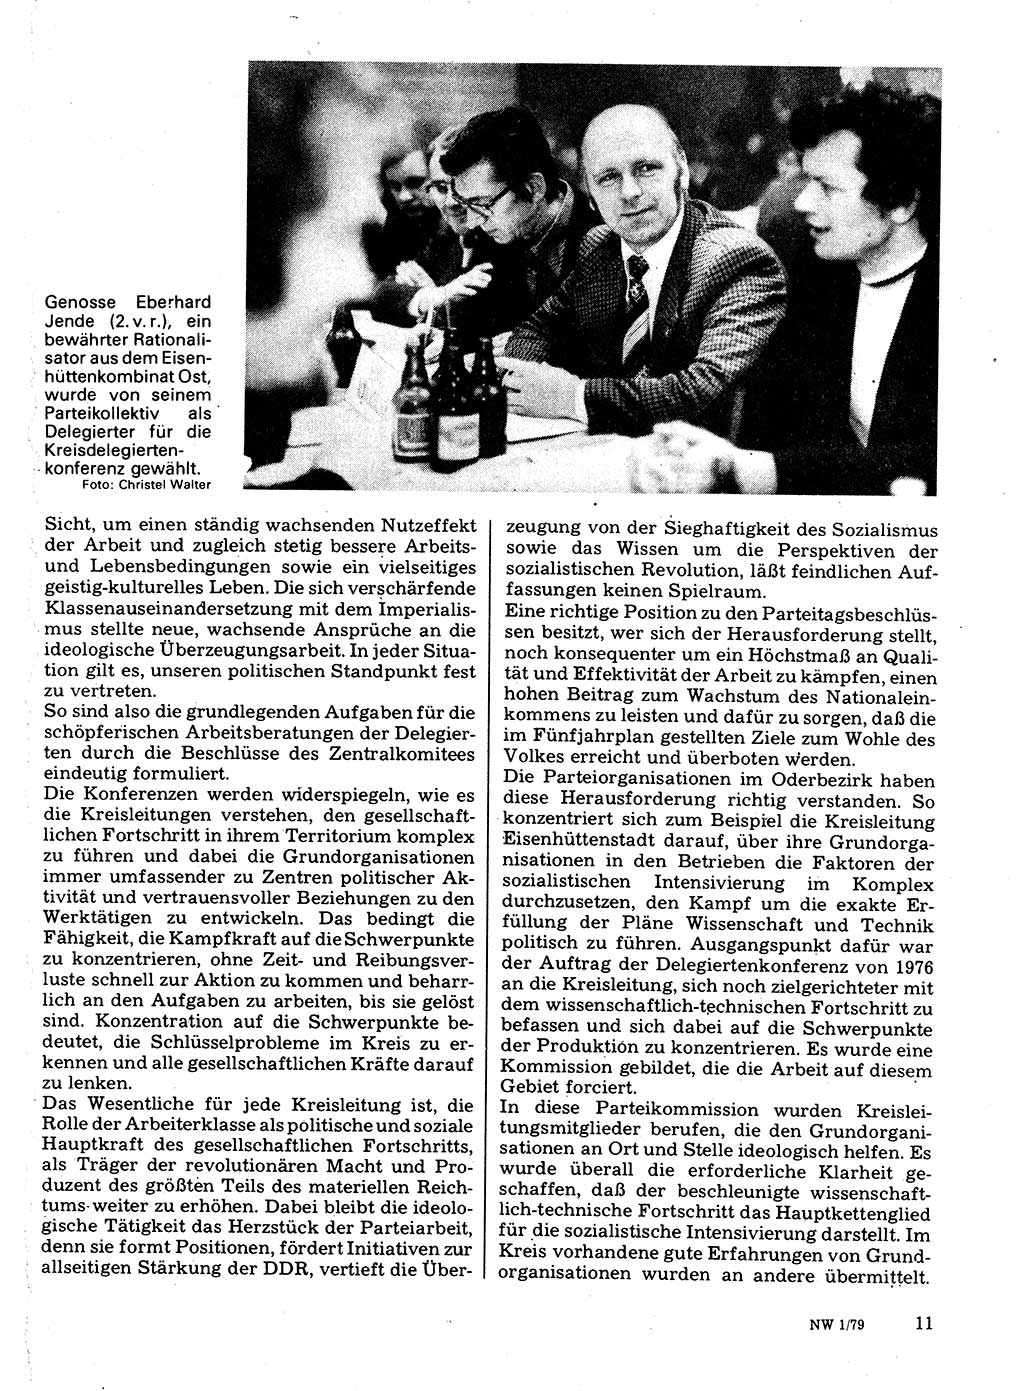 Neuer Weg (NW), Organ des Zentralkomitees (ZK) der SED (Sozialistische Einheitspartei Deutschlands) für Fragen des Parteilebens, 34. Jahrgang [Deutsche Demokratische Republik (DDR)] 1979, Seite 11 (NW ZK SED DDR 1979, S. 11)